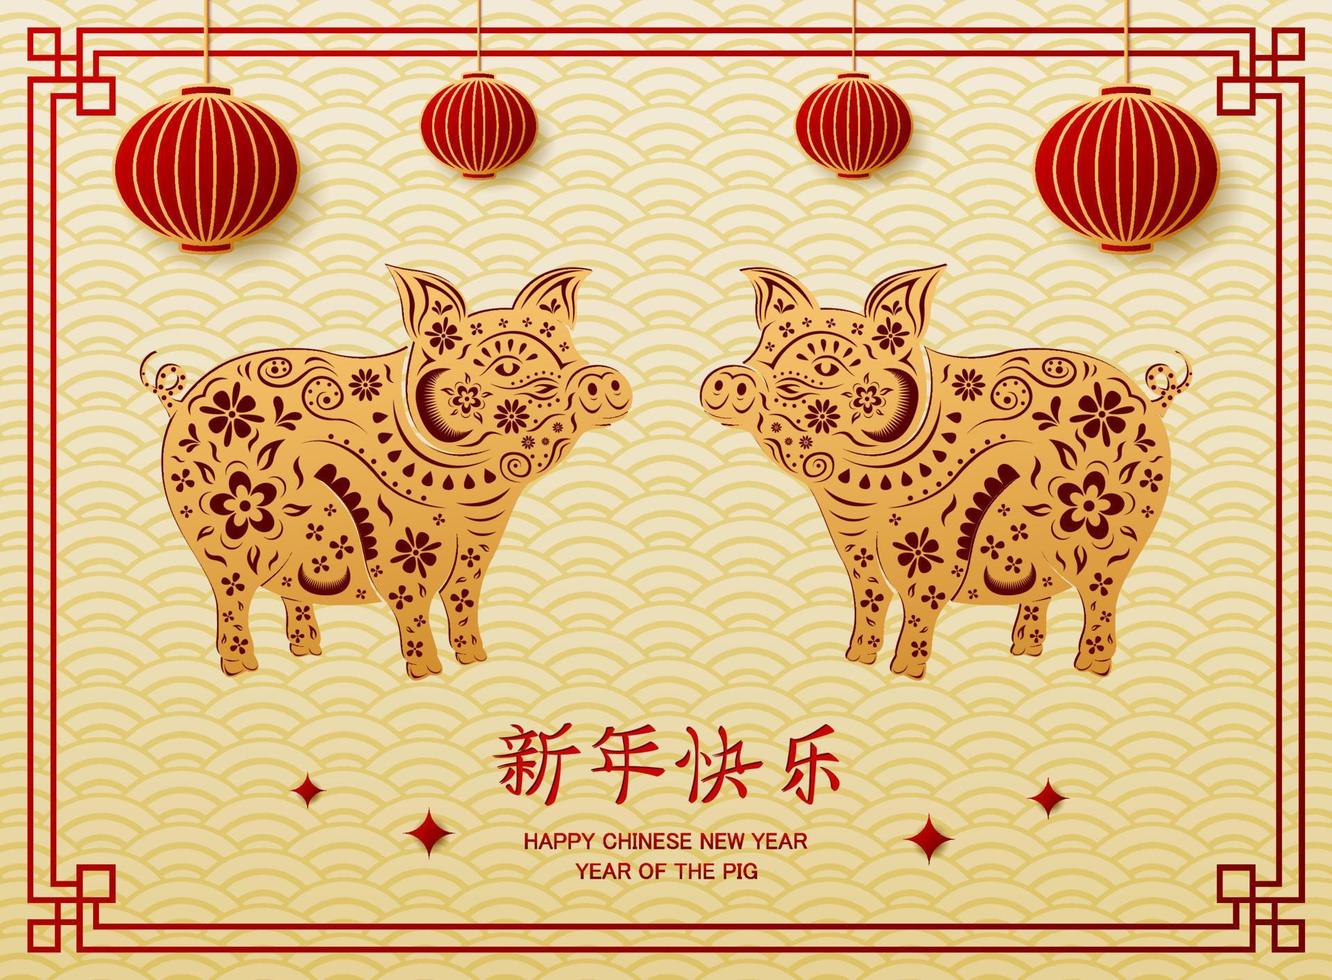 Chinese nieuw jaar met varken dier en Chinese lantaarns hangende vector